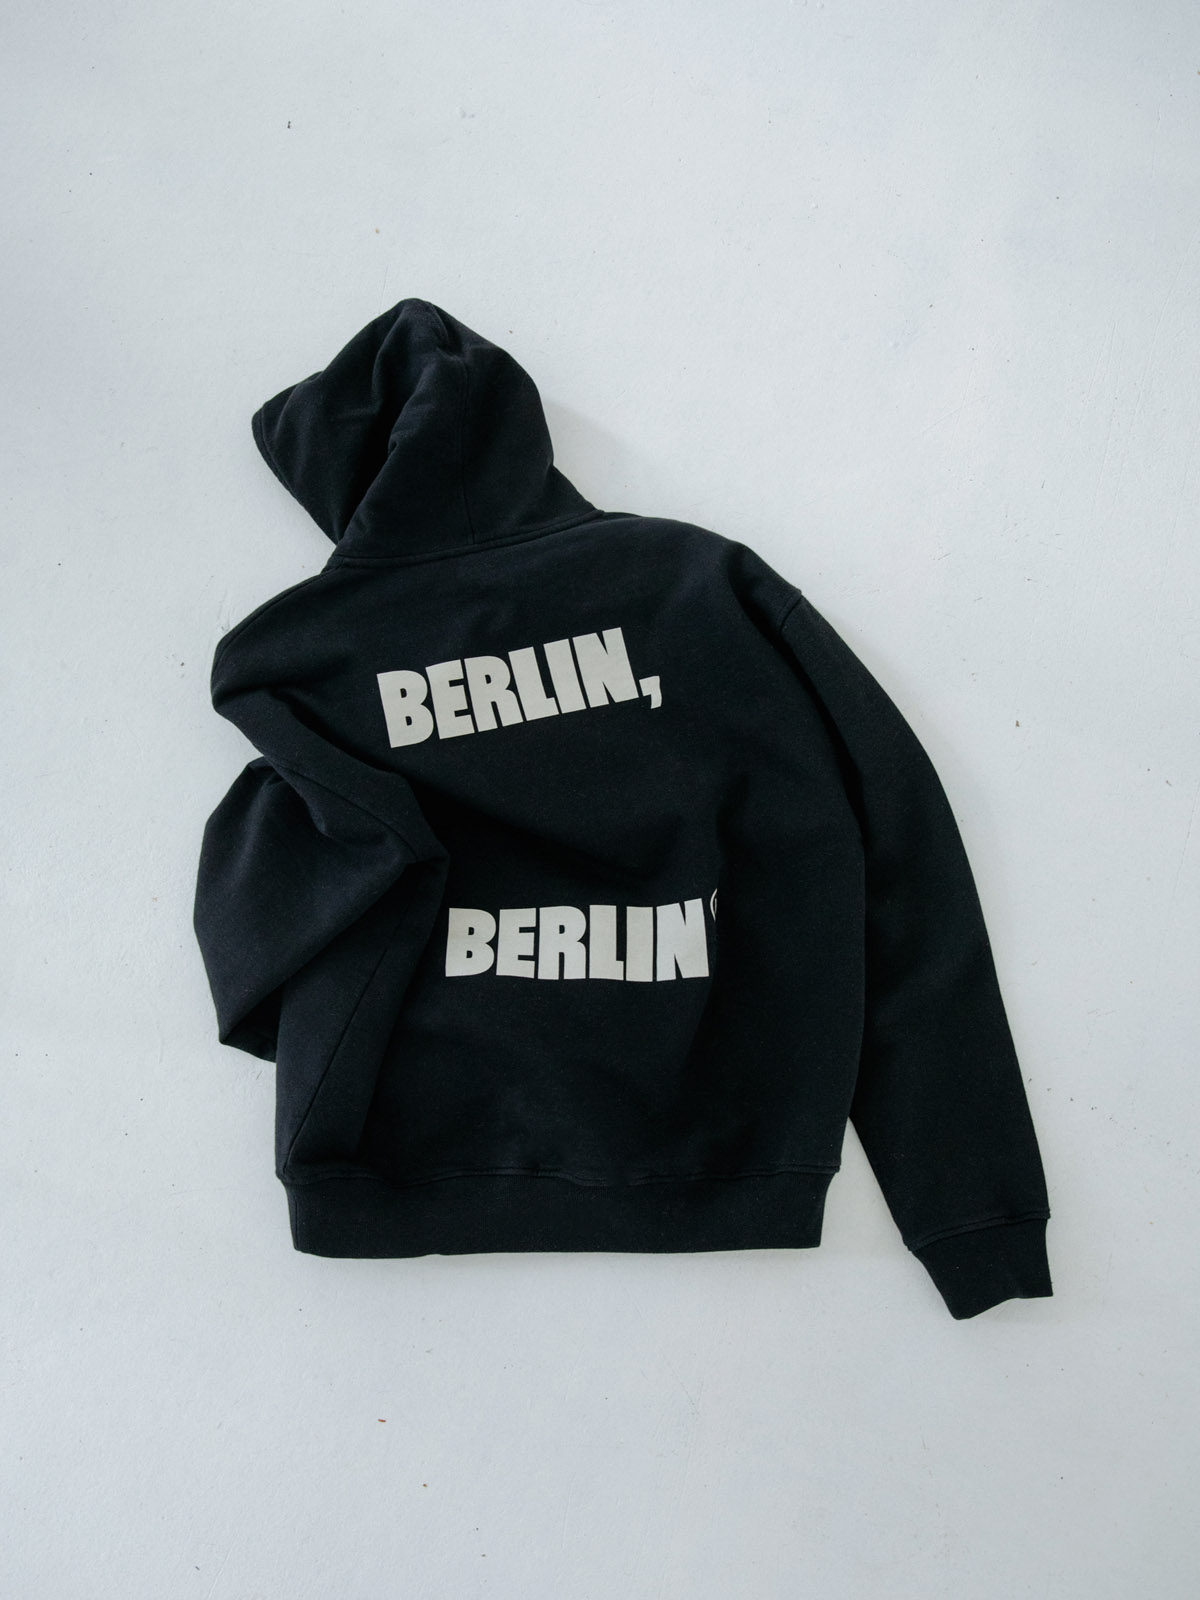 berlin-berlin-06